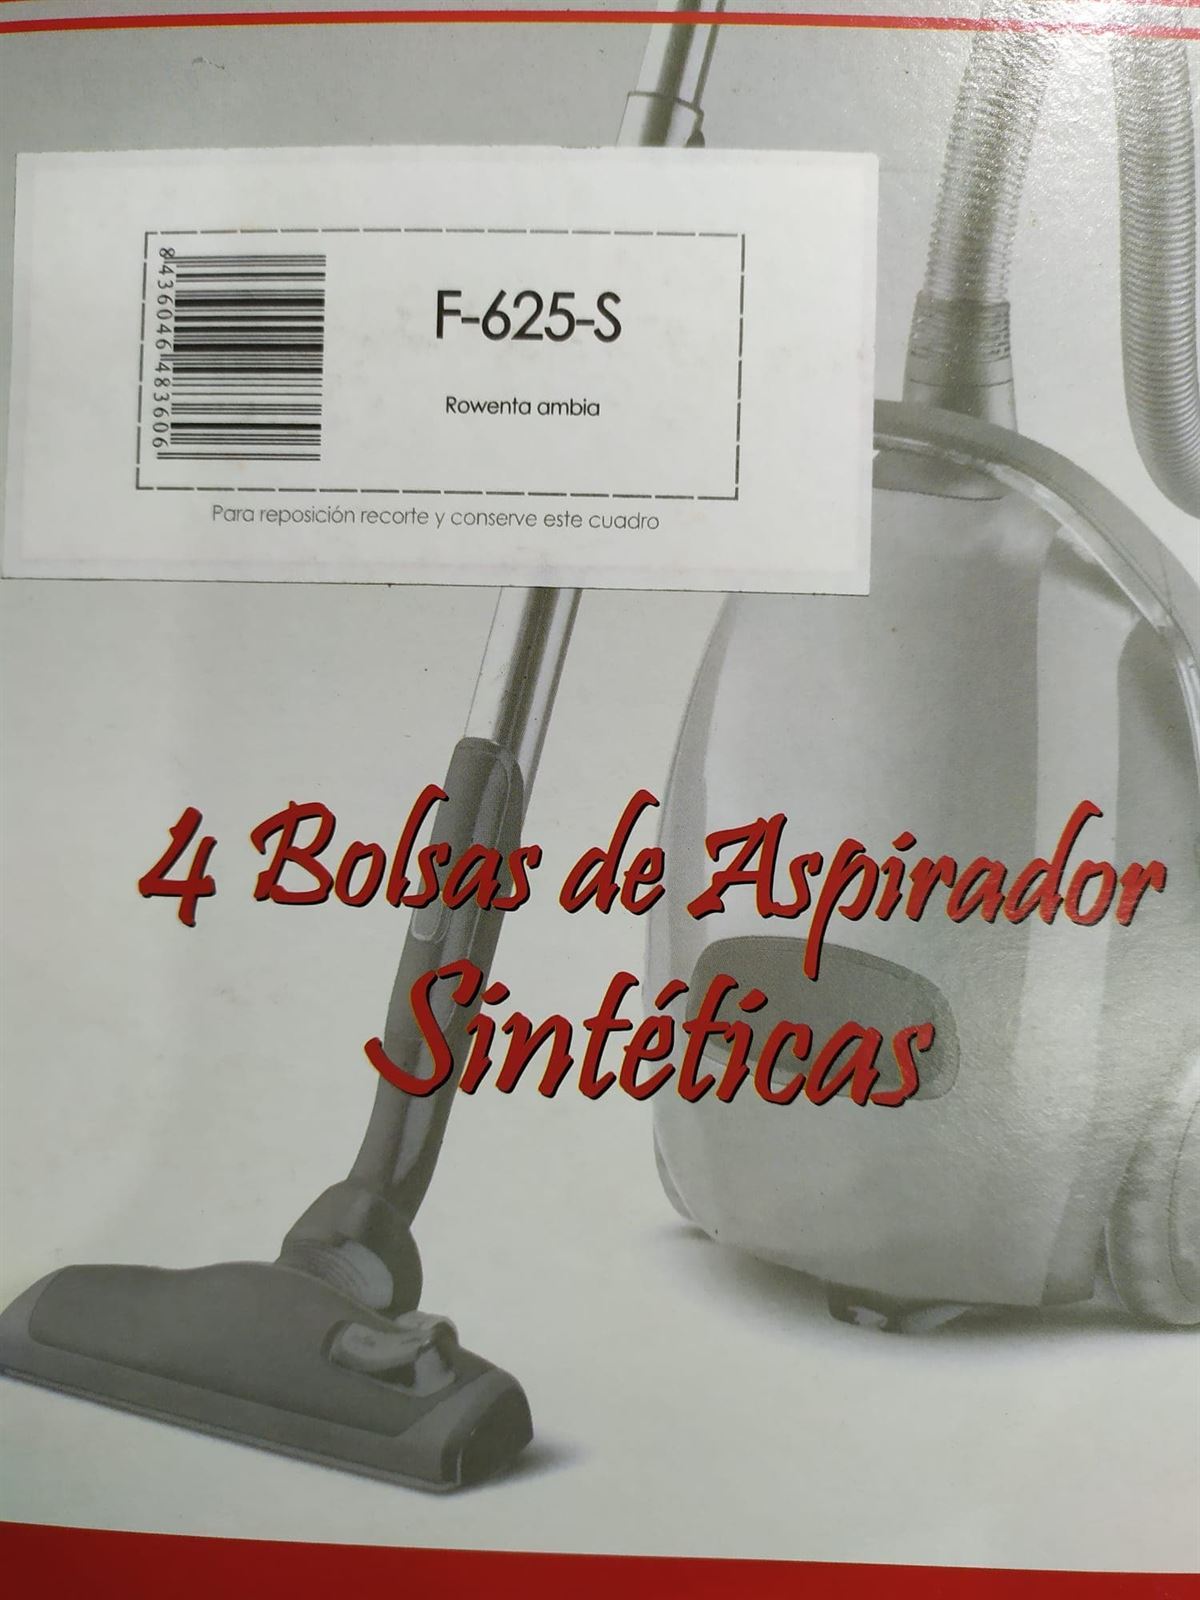 BOLSA ASPIRADOR ROWENTA AMBIA, CAJA 4 BOLSAS SINTETICAS, F-625-S